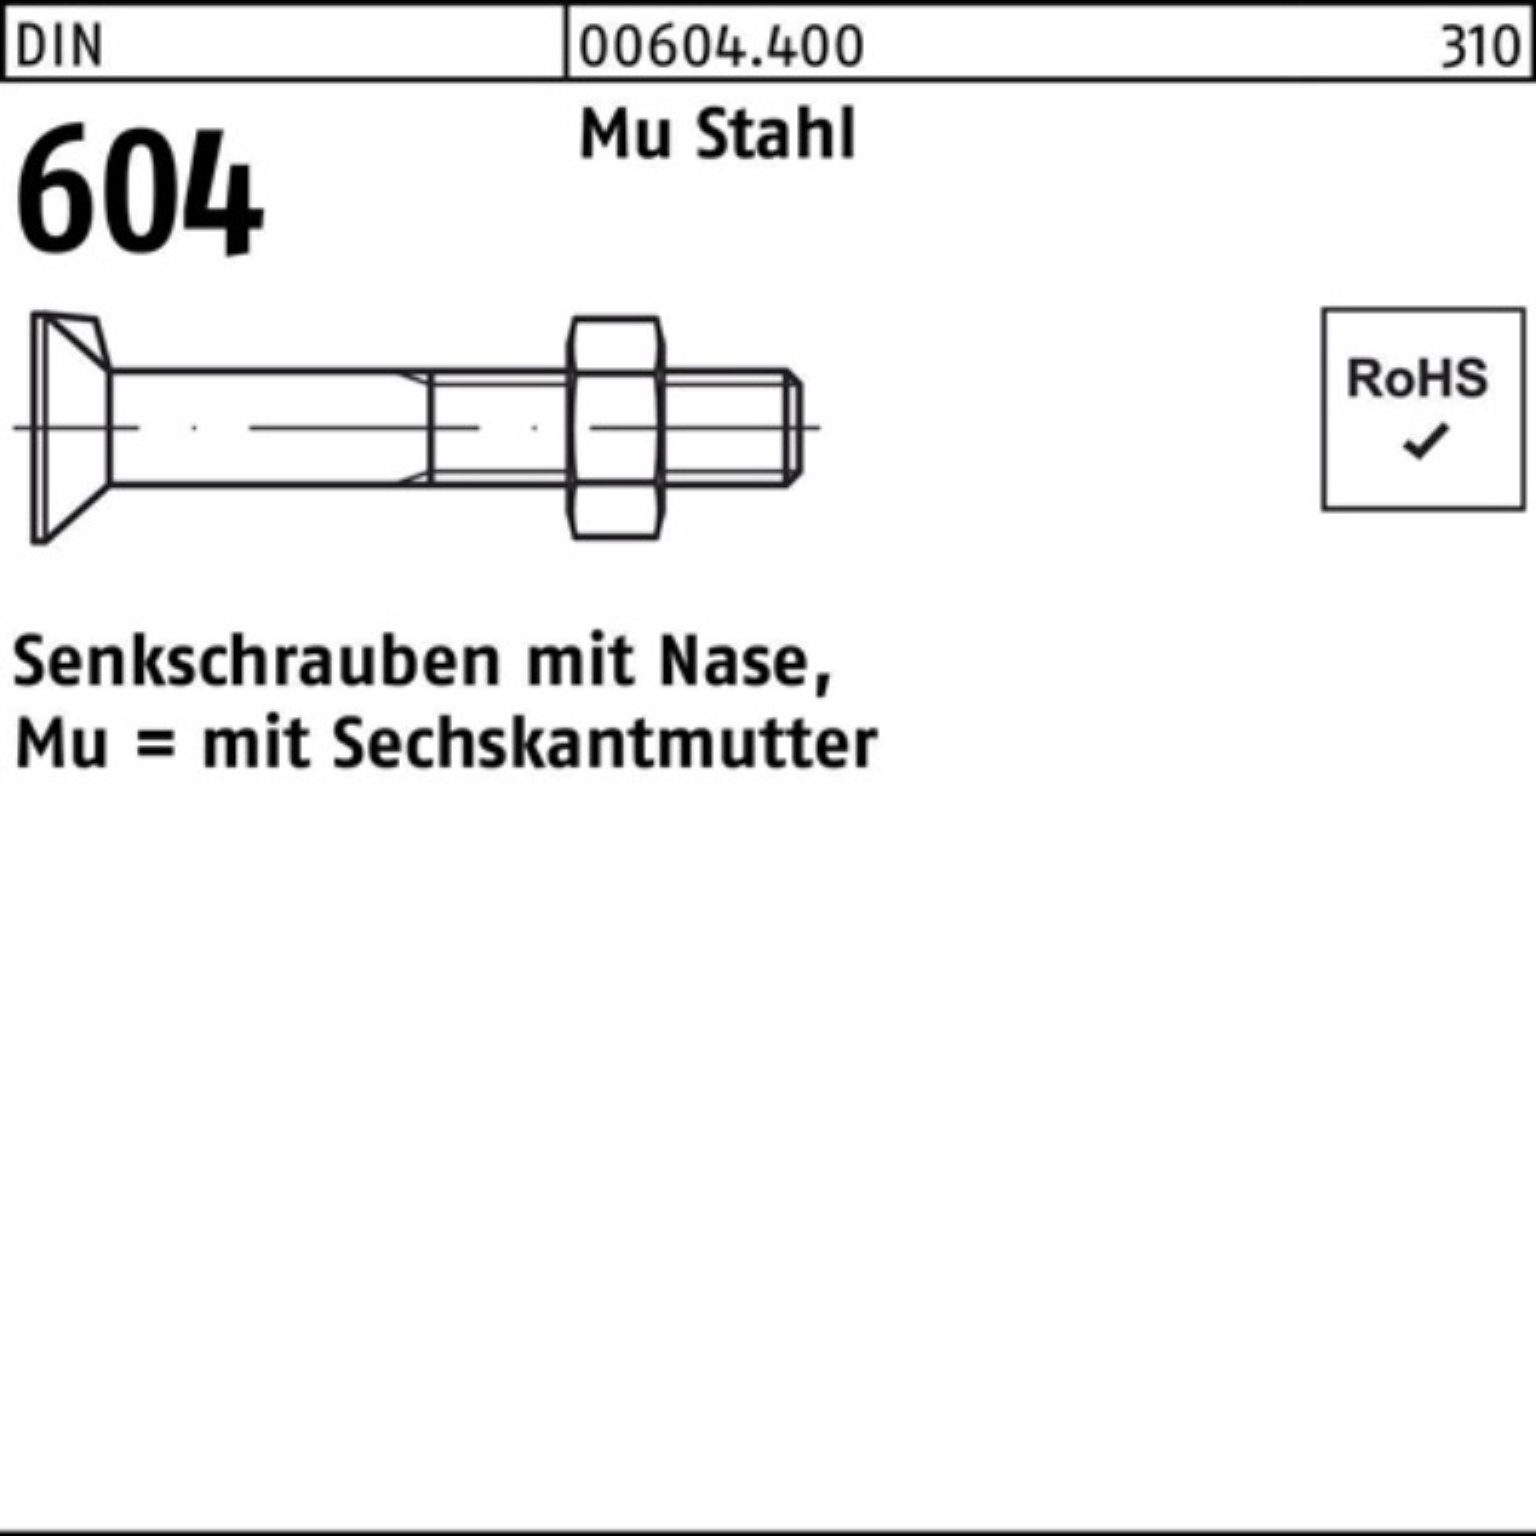 Reyher Senkschraube 100er Pack Nase/6-ktmutter M12x 604 5 Stahl Mu DIN 90 4.6 Senkschraube